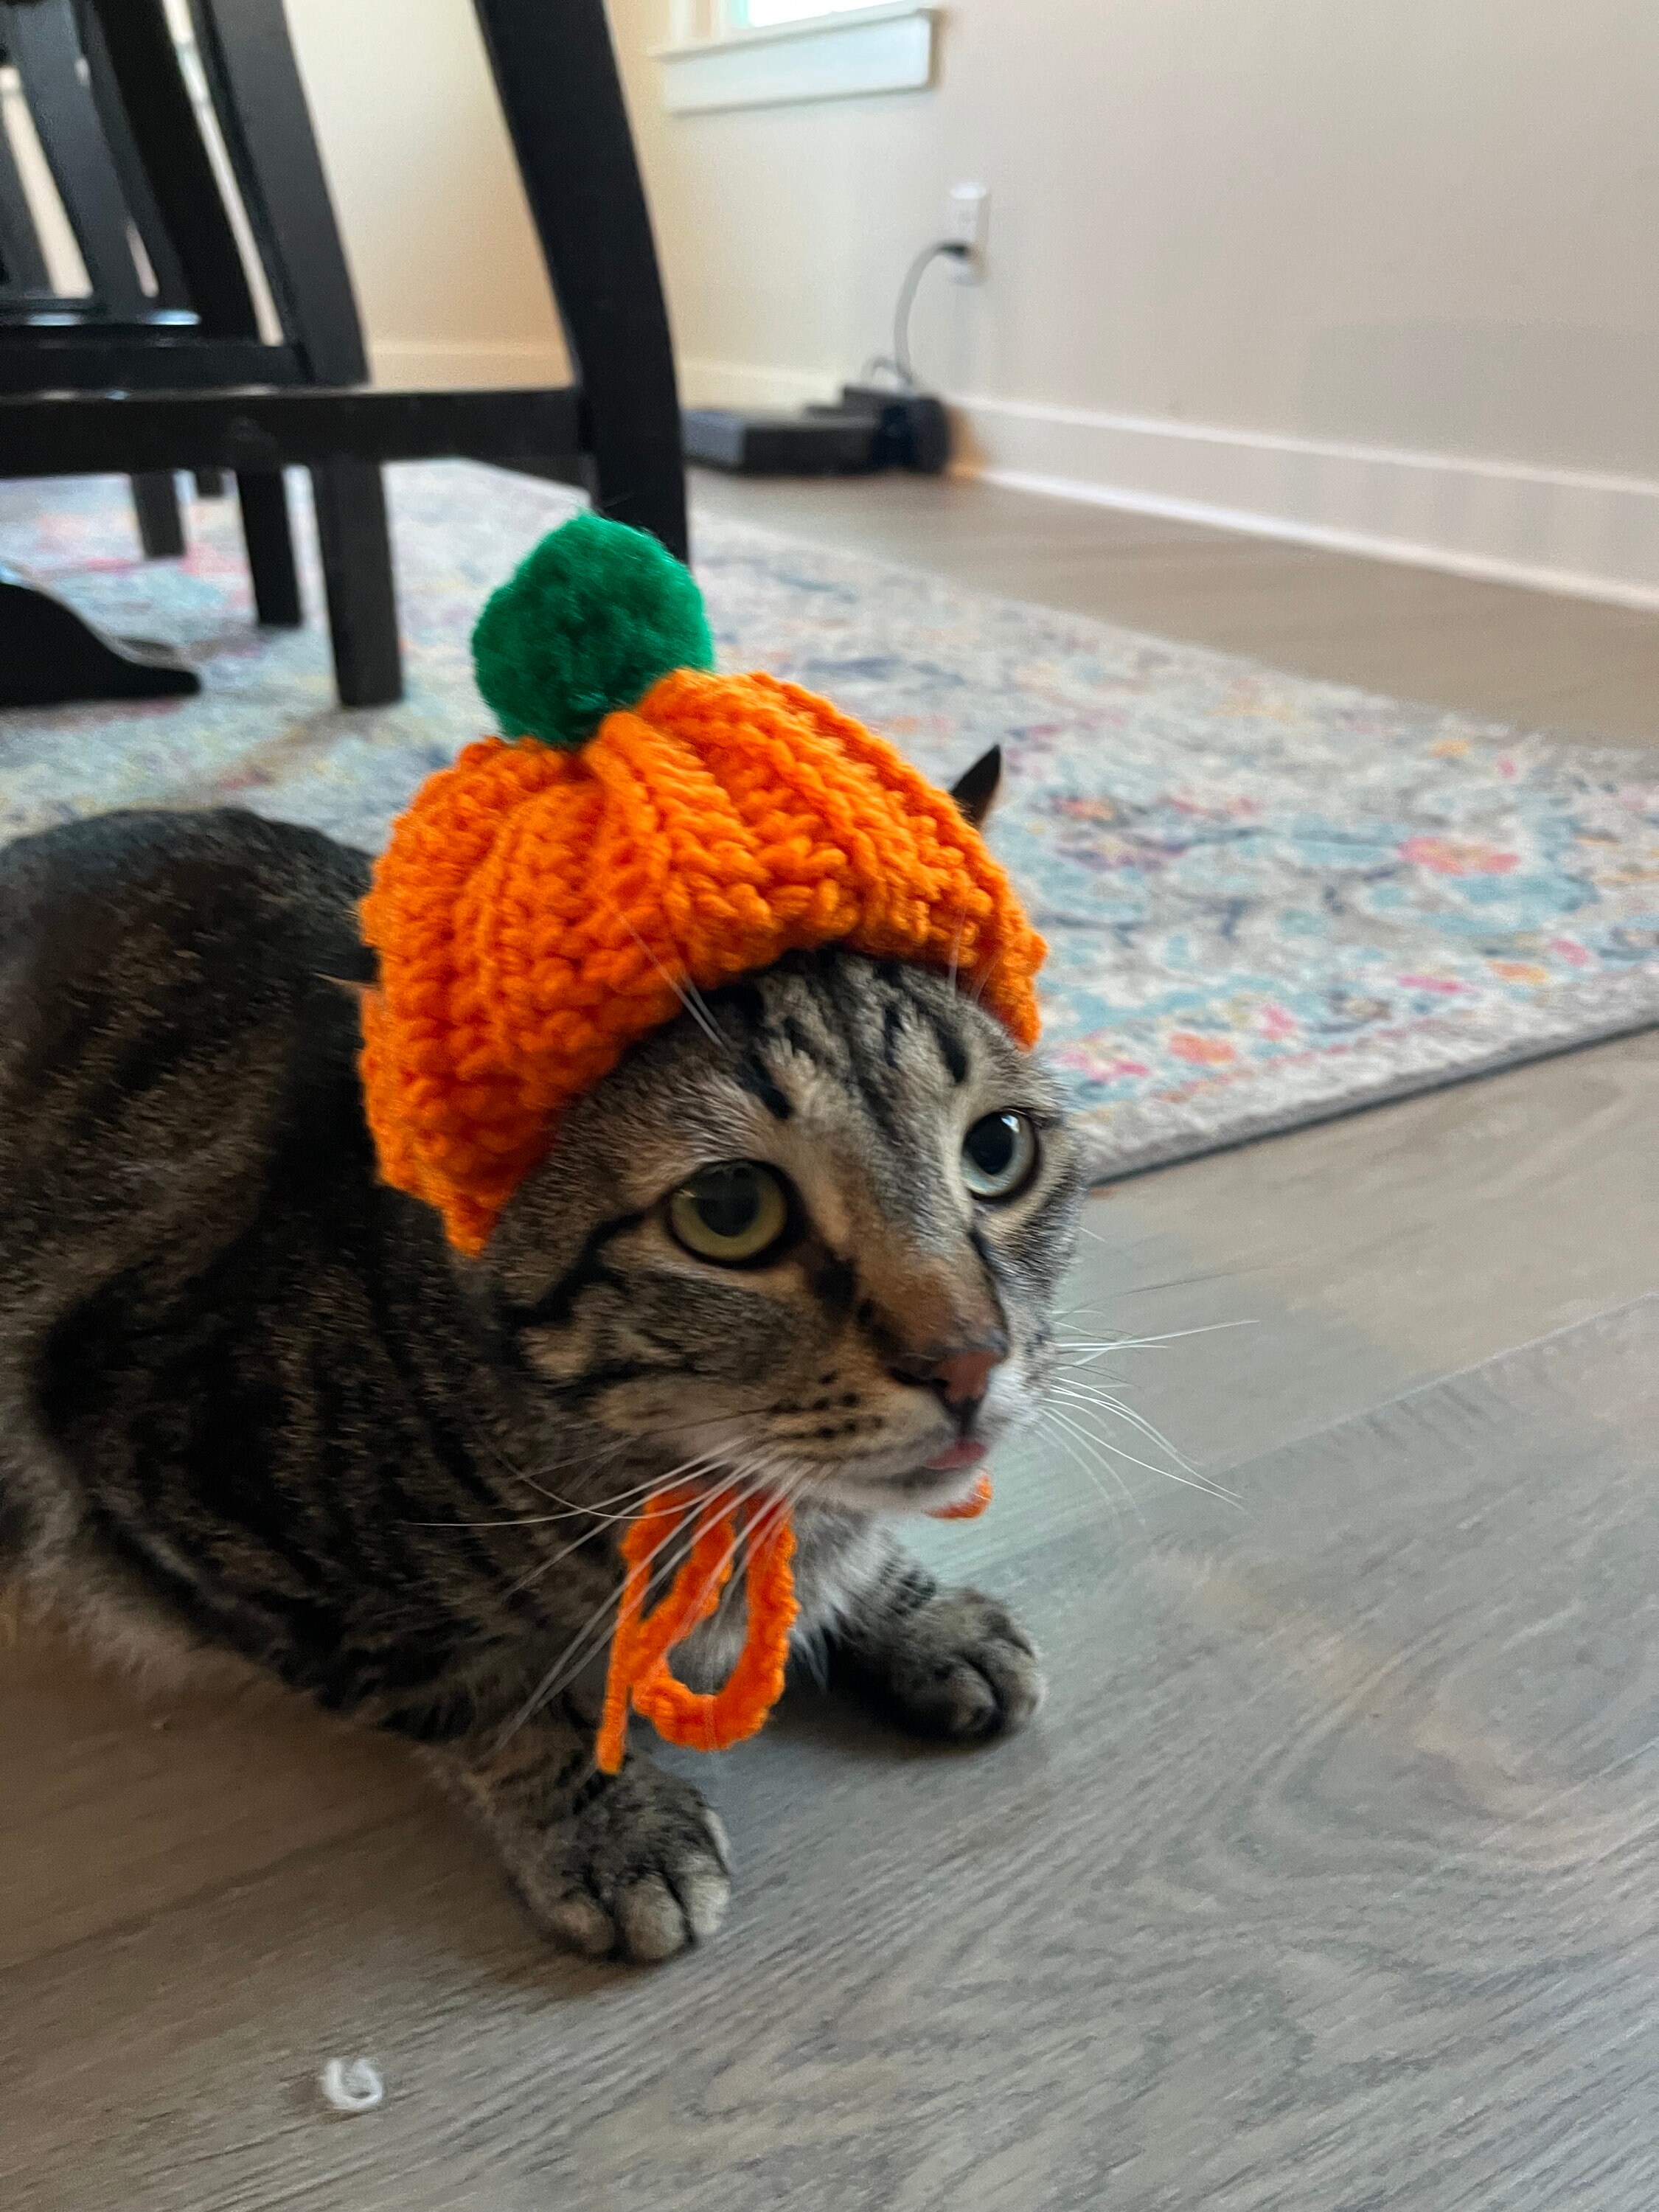 Crochet Baby & Kids Downloads - Pumpkin the Cat & Hat Crochet Pattern